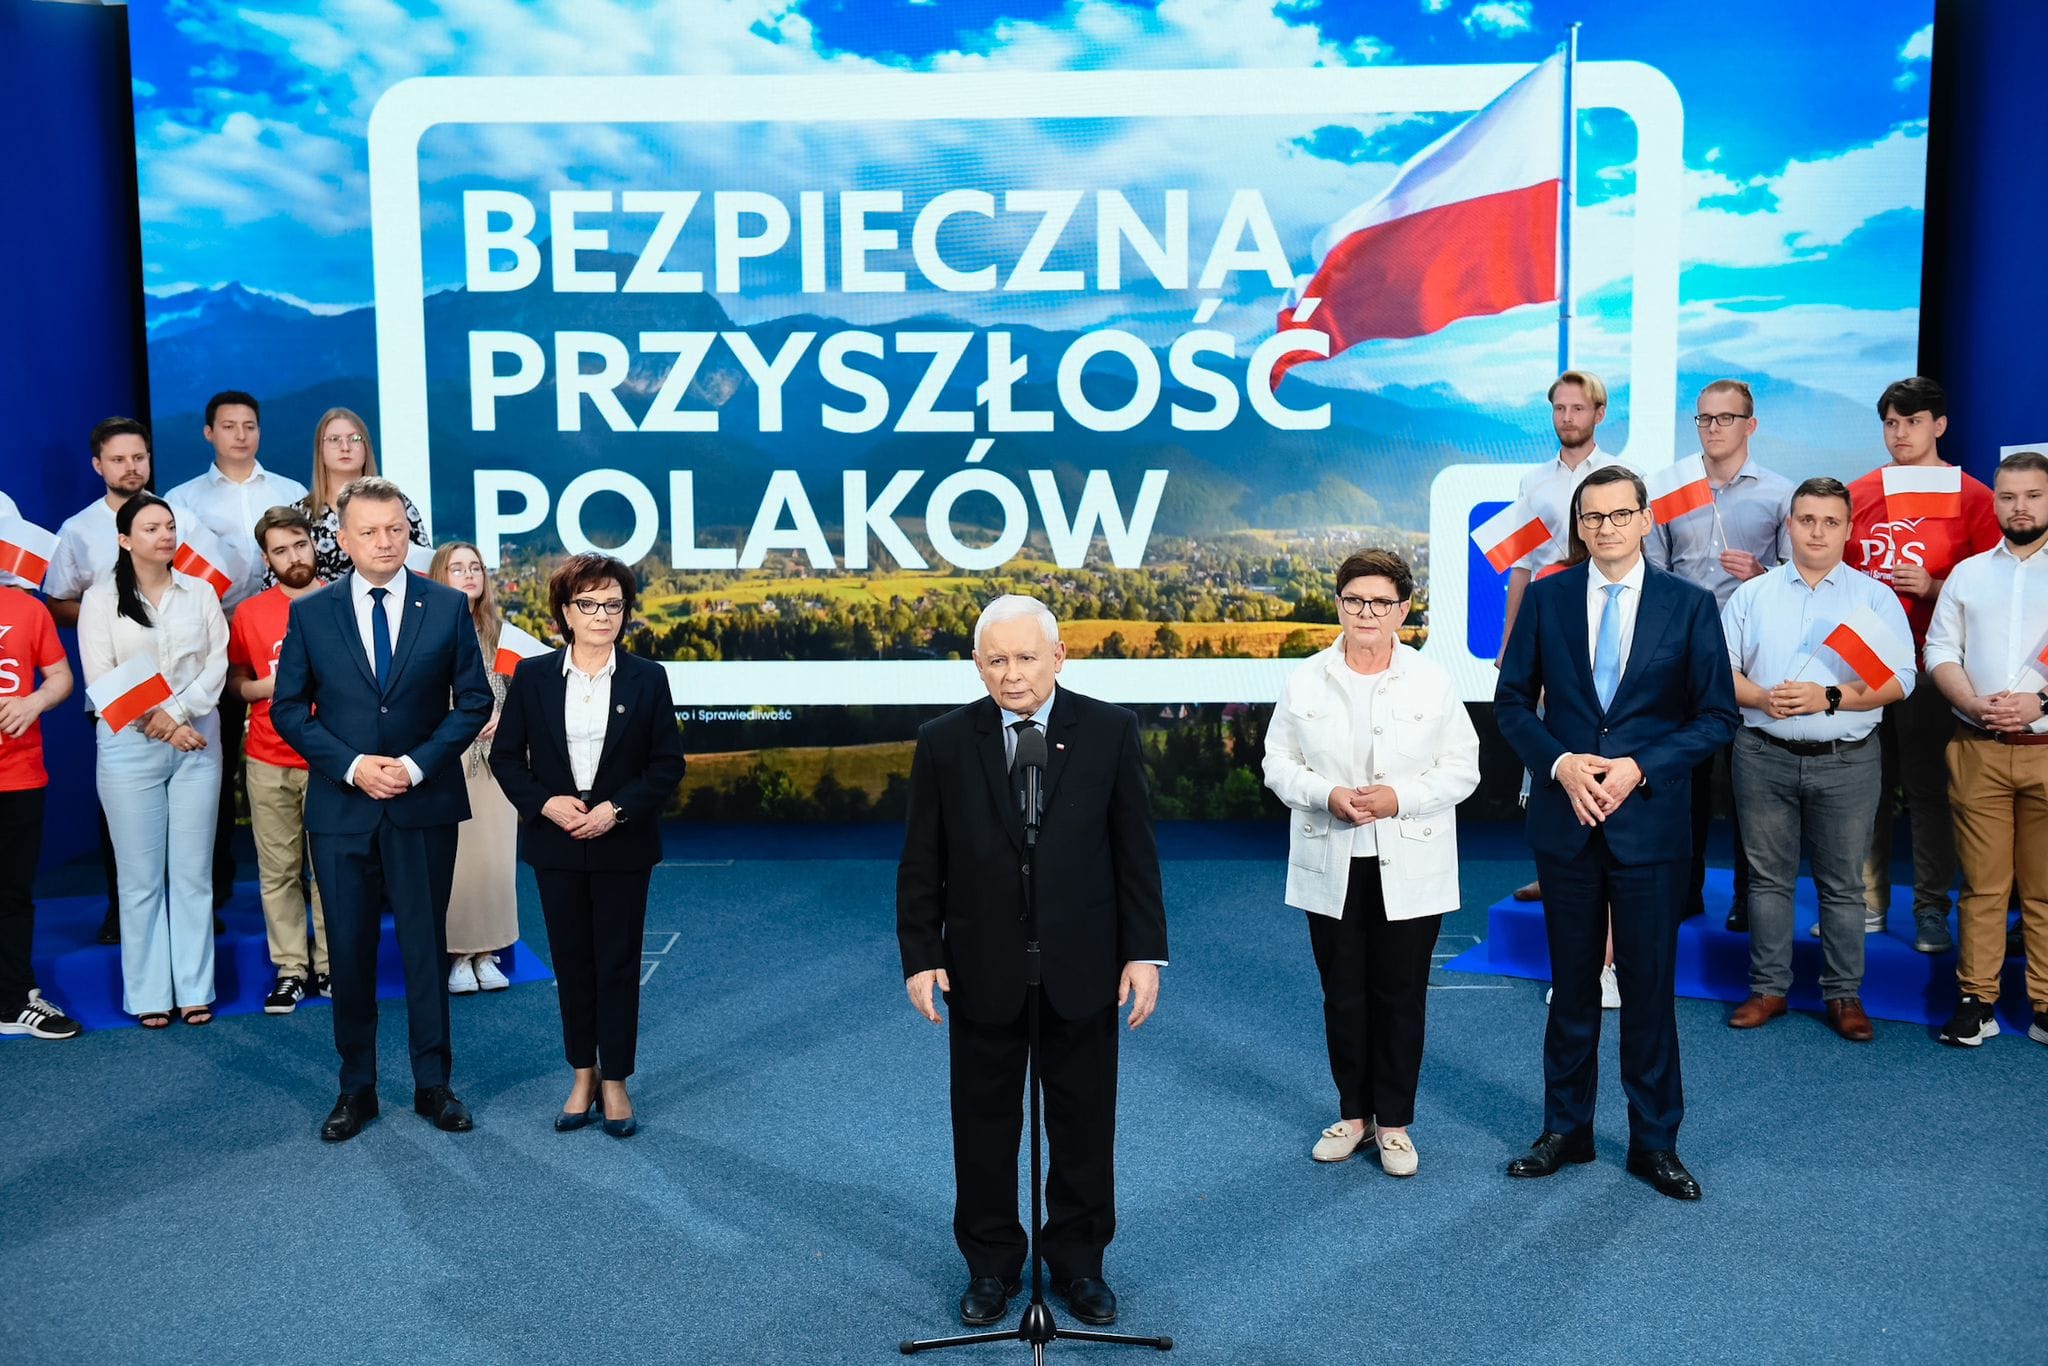 Bezpieczna Przyszłość Polaków – hasłem wyborczym Prawa i Sprawiedliwości